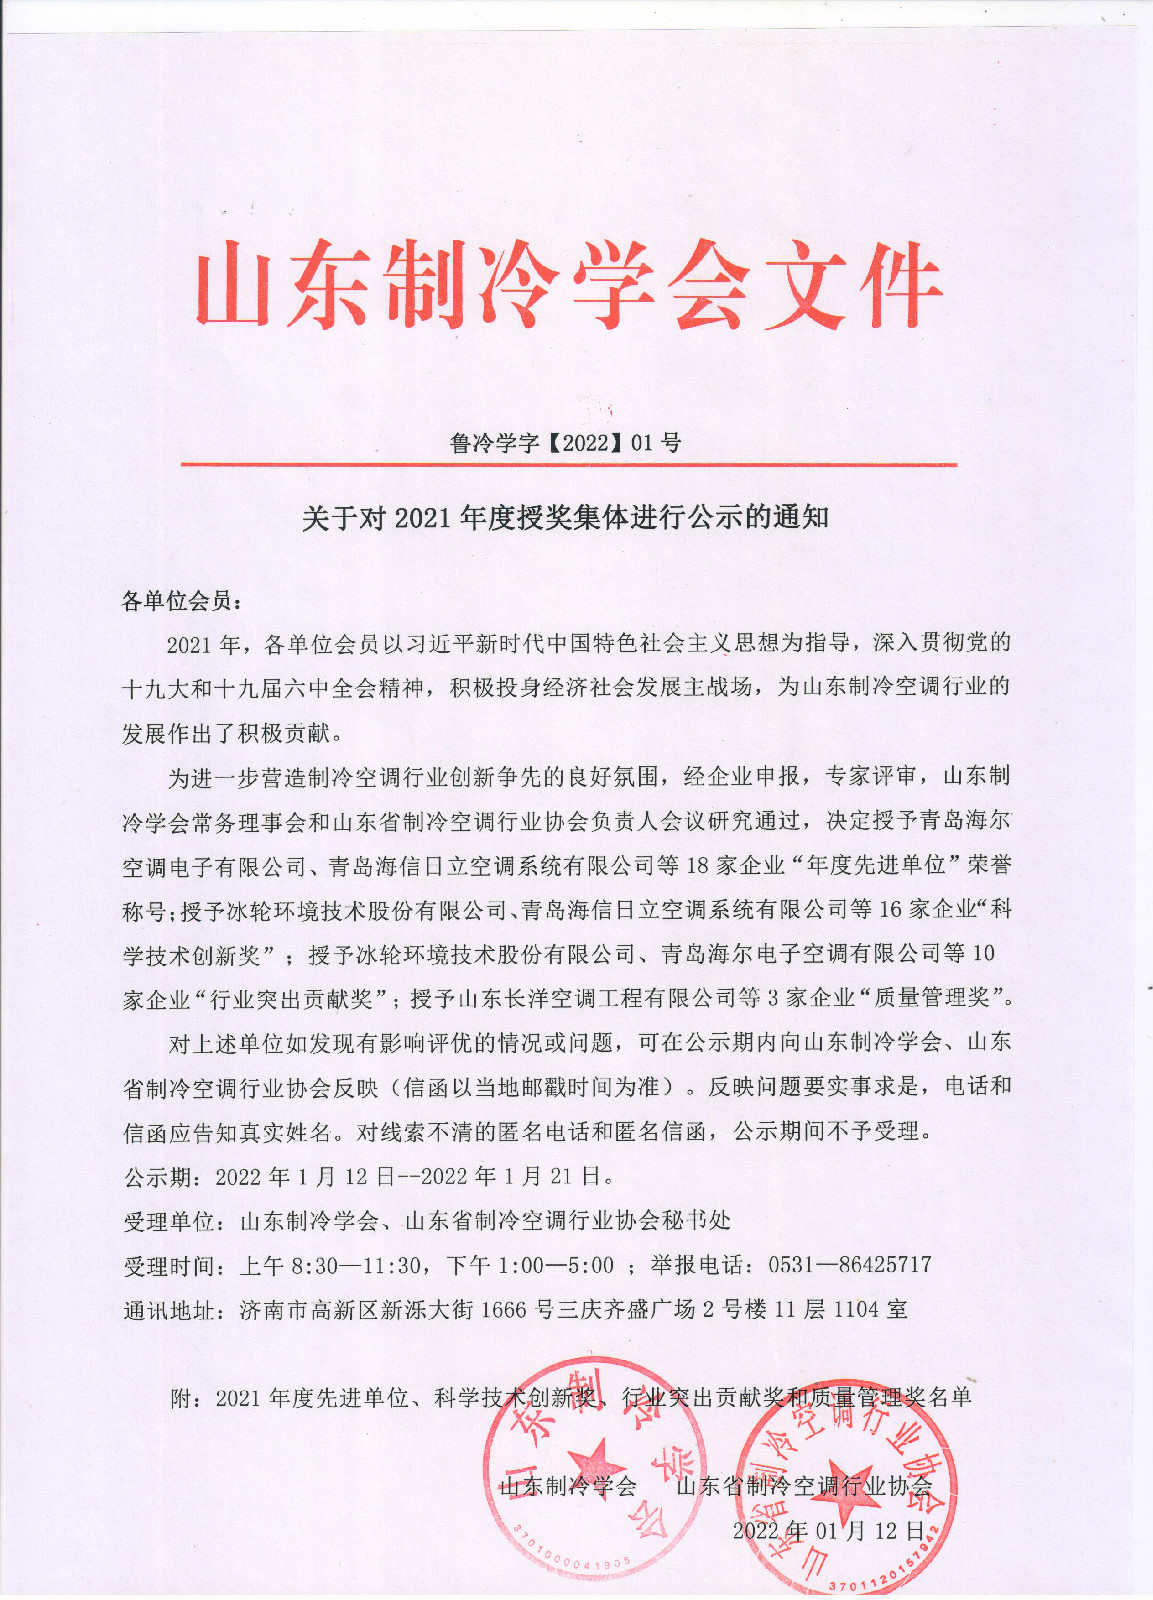 云开体育(China)官方网站对2021年度授奖集体进行公示的通知 001.jpg